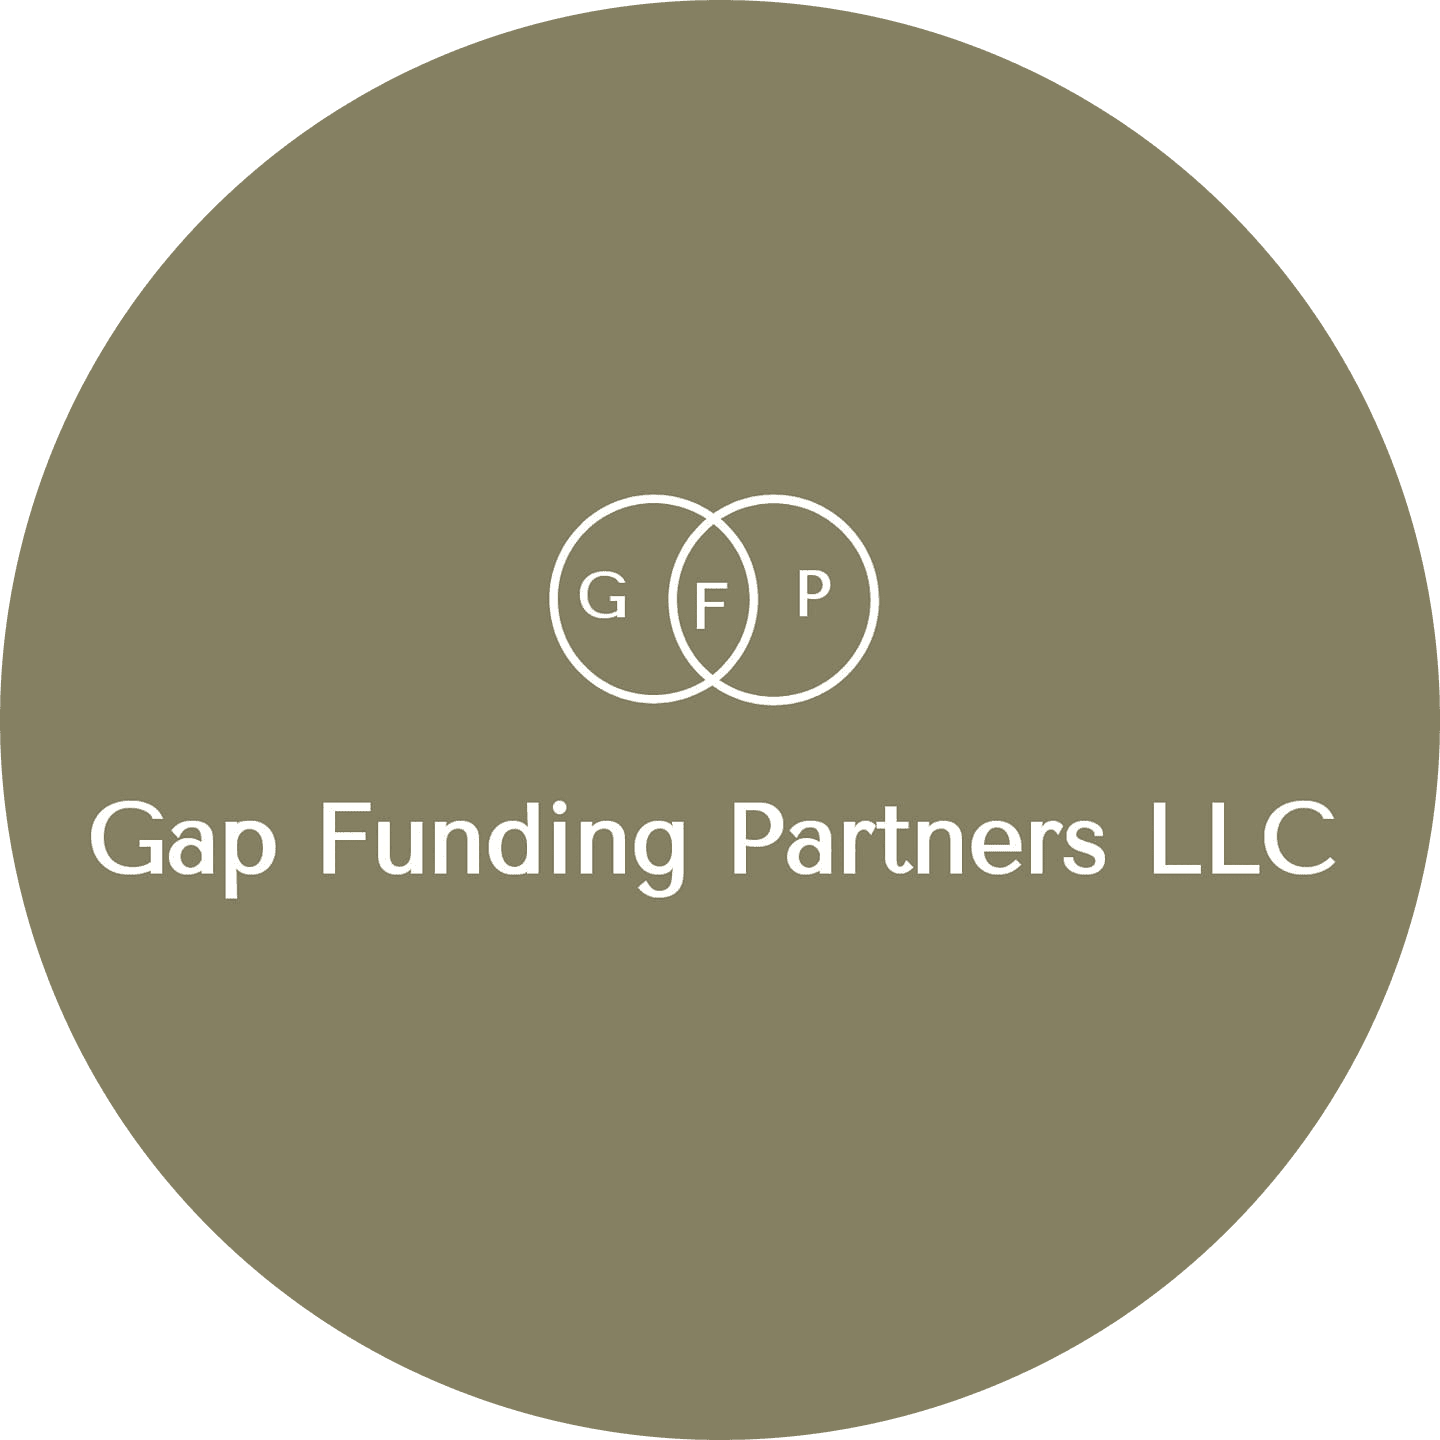 Gap Funding Partners